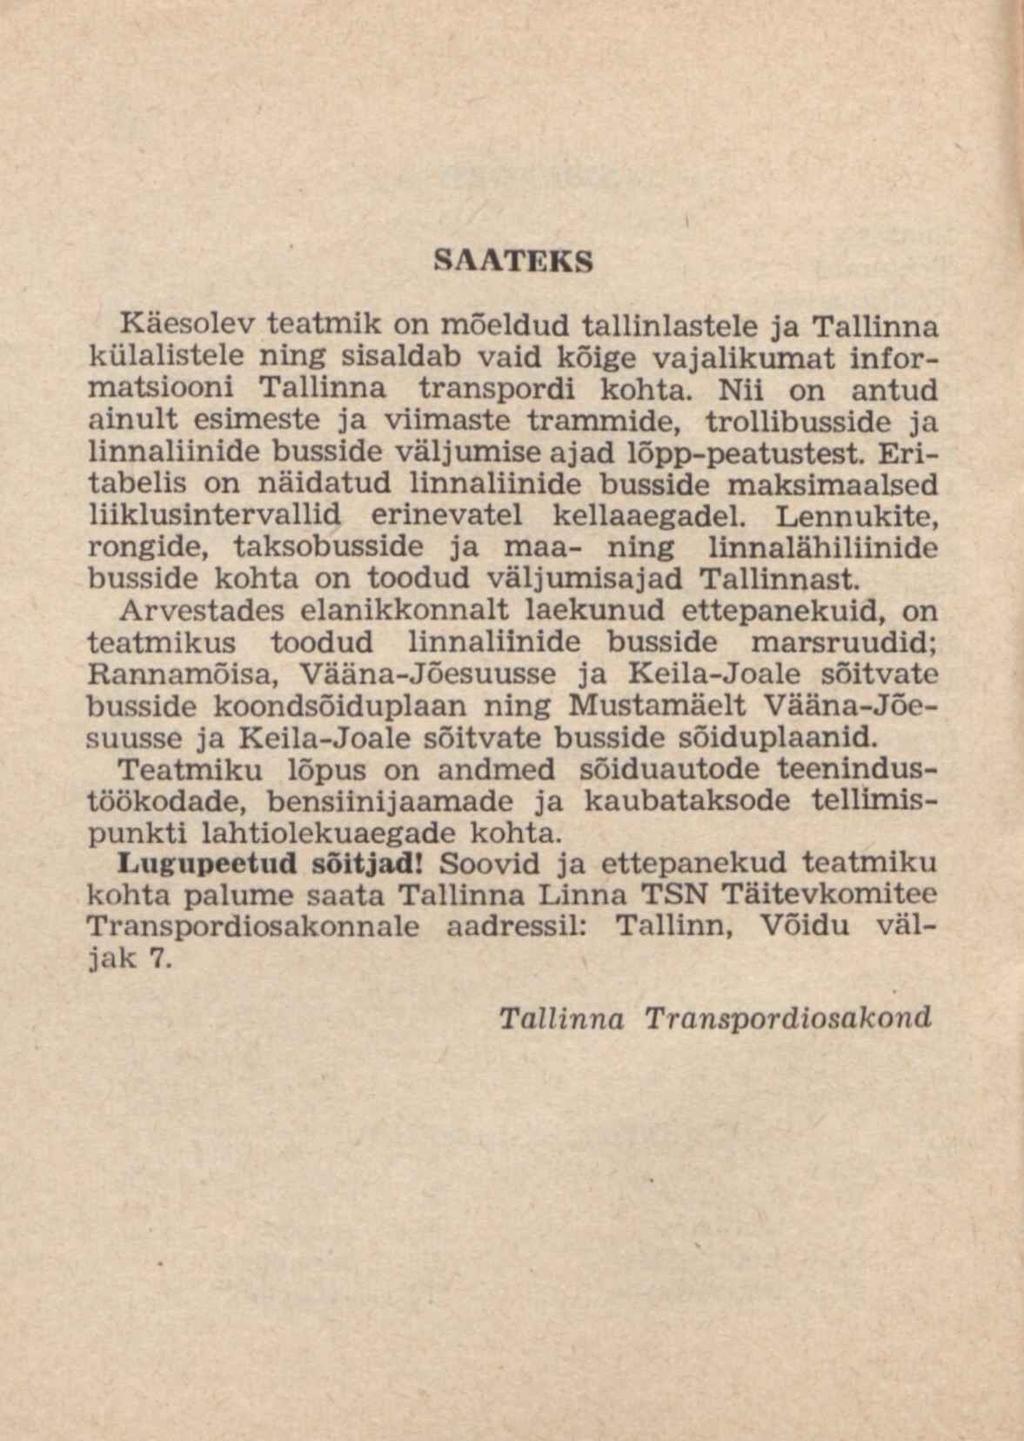 SAATEKS Käesolev teatmik õn mõeldud tallinlastele ja Tallinna külalistele ning sisaldab vaid kõige vajalikumat informatsiooni Tallinna transpordi kohta.